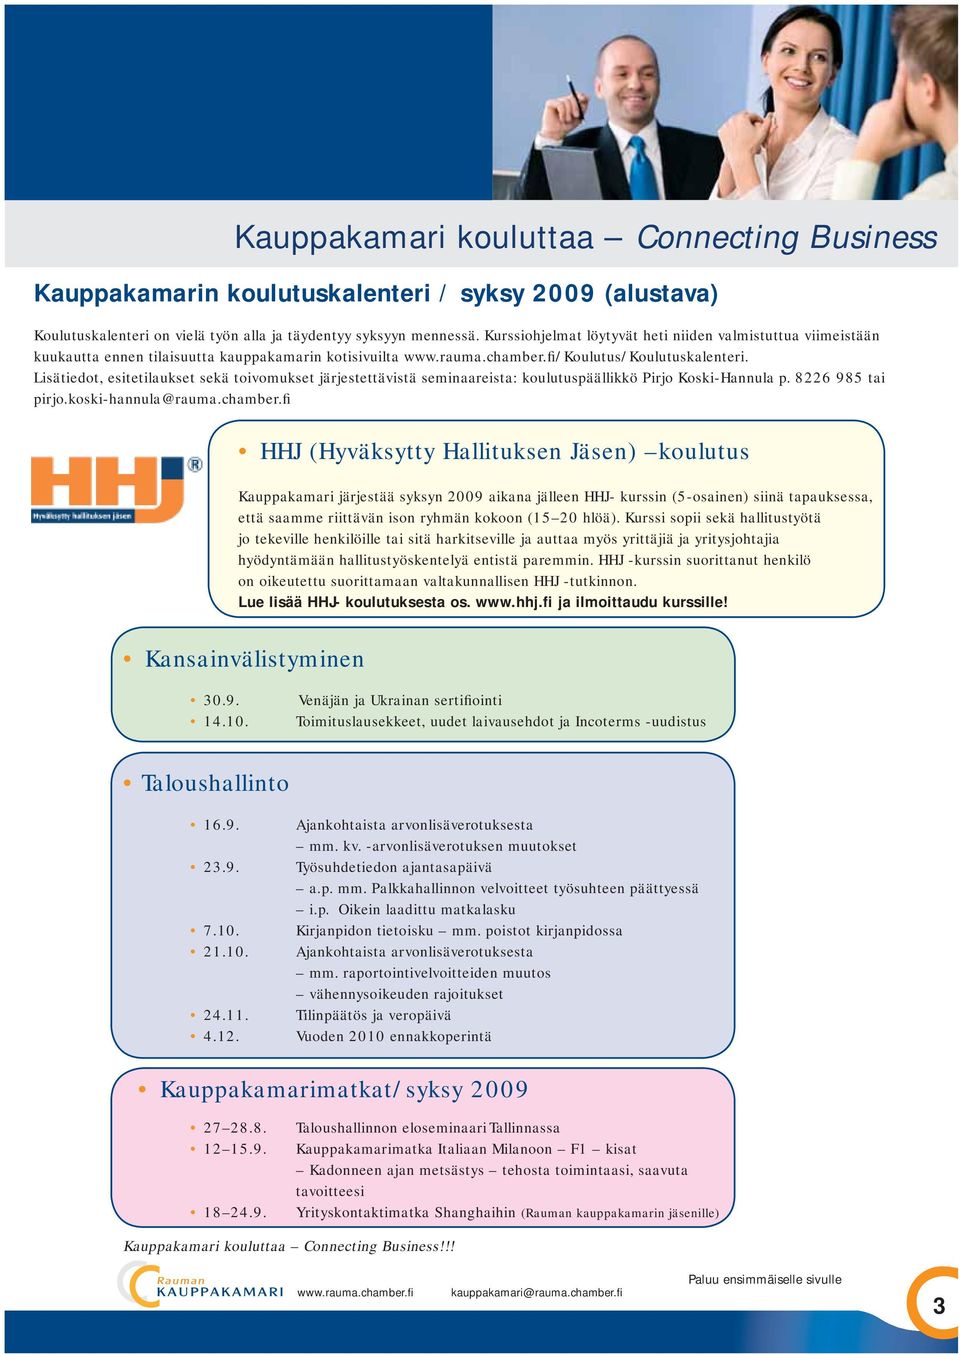 Lisätiedot, esitetilaukset sekä toivomukset järjestettävistä seminaareista: koulutuspäällikkö Pirjo Koski-Hannula p. 8226 985 tai pirjo.koski-hannula@rauma.chamber.